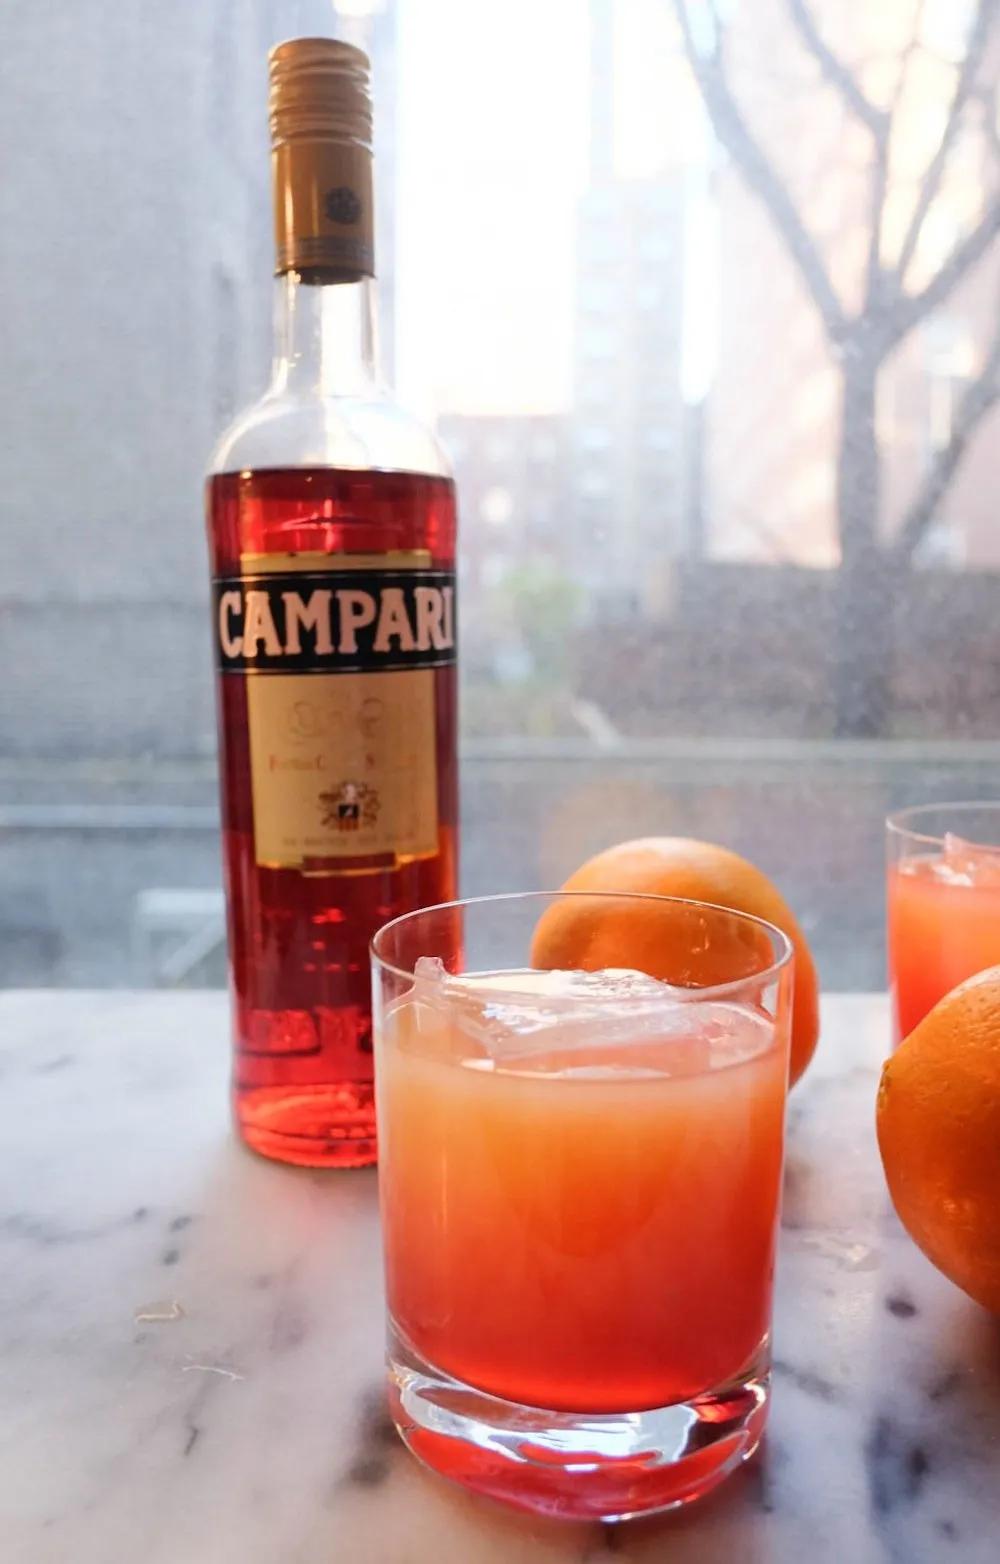 The Campari Orange. - The Stripe